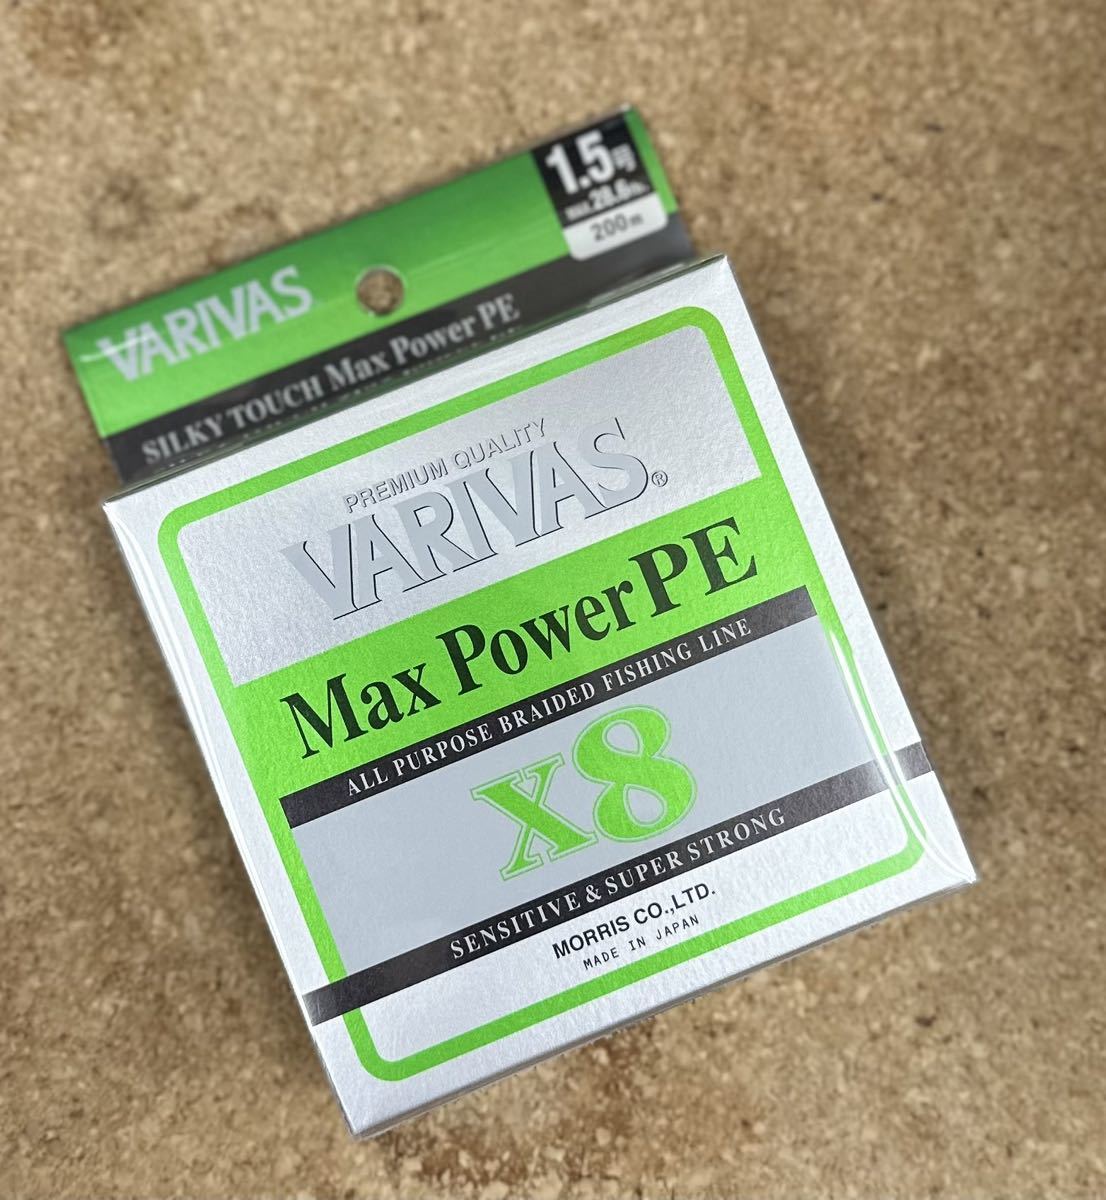 [新品] VARIVAS バリバス マックスパワーPE X8 1.5号200m #8ブレイド #MAX POWER #ソルトウォーター #フレッシュ #PEライン